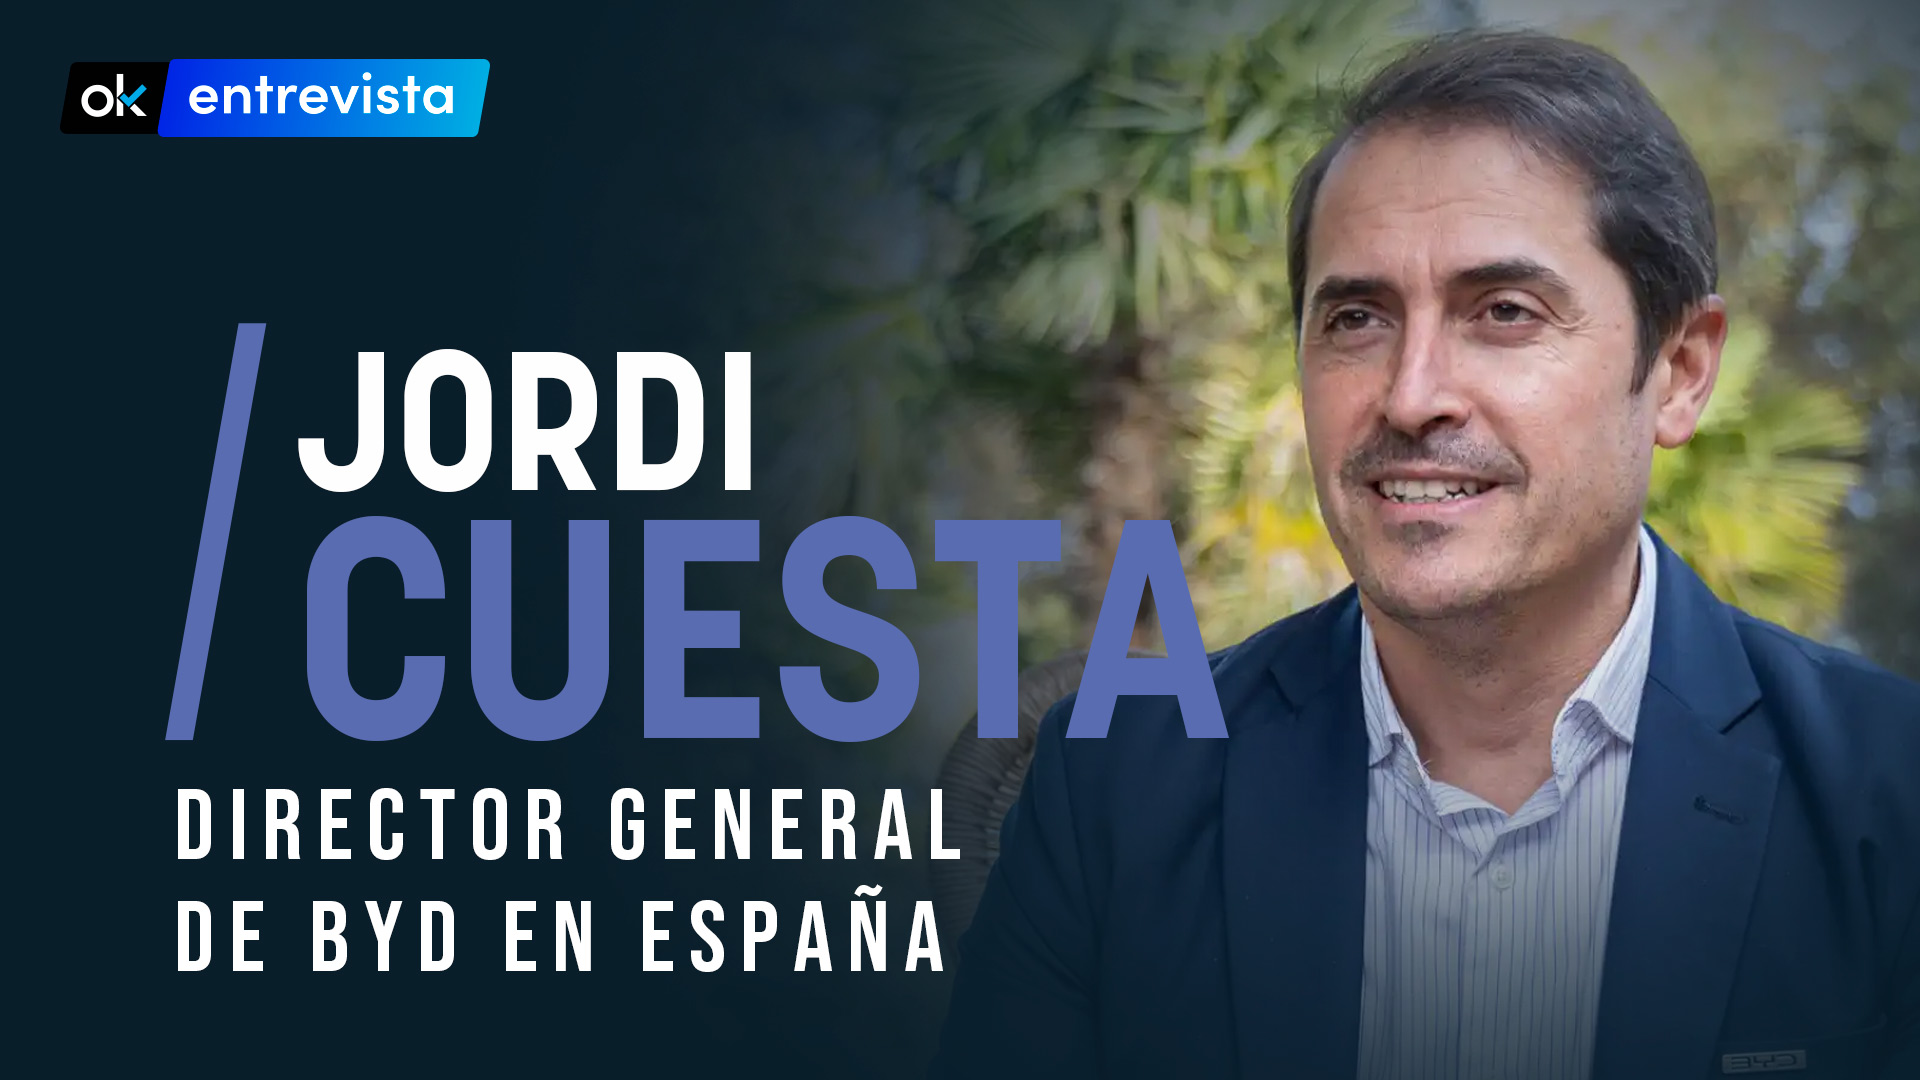 Jordi Cuesta, director general de BYD en España.